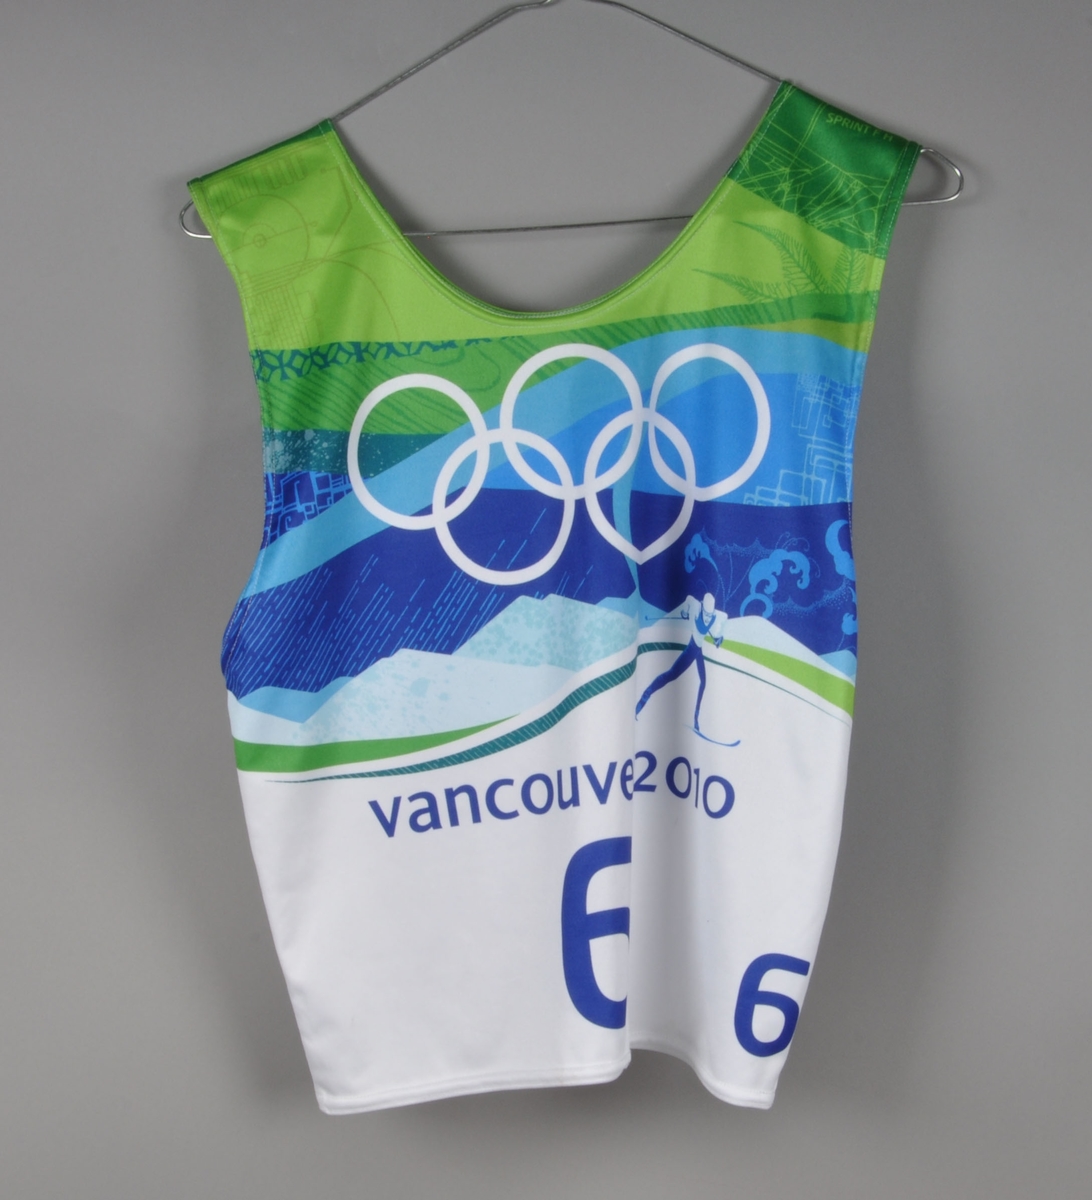 Flerfarget startnummer med nummer 6. Det er motiv av de olympiske ringene og en langrennsløper med fjell i bakgrunnen. Startnummeret er signert av Northug.